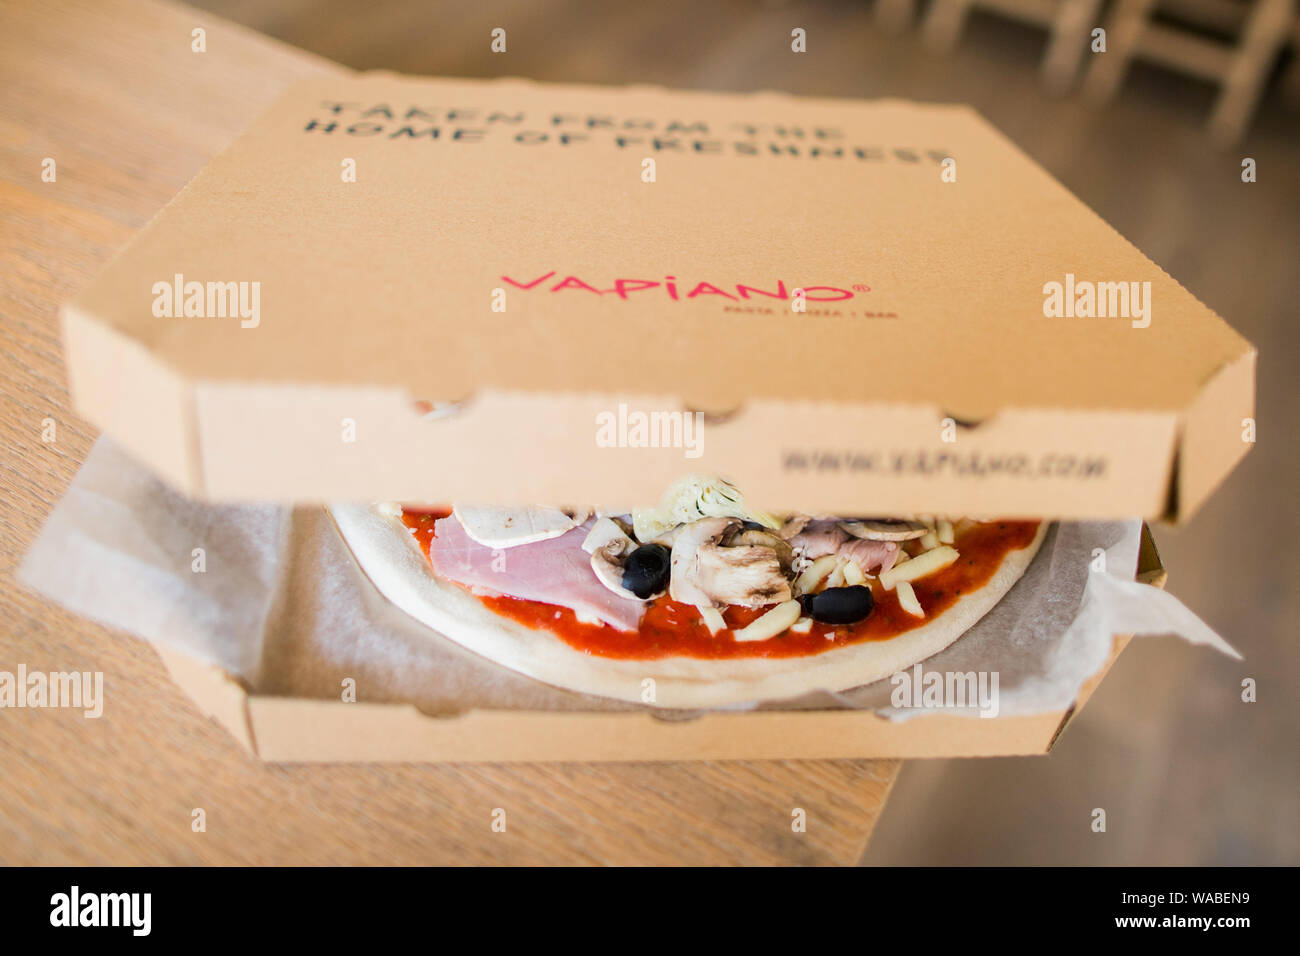 Bonn, Deutschland. 07. Juli 2015. Eine rohe Pizza liegt auf einem Tisch in einem Restaurant Vapiano. Nach dem Platzen der US-Wirtschaft und dem unerwarteten Weggang von seinem Chef, der Situation der bereits angeschlagenen Restaurantkette Vapiano hat sich verschlechtert. Credit: Rolf Vennenbernd/dpa/Alamy leben Nachrichten Stockfoto